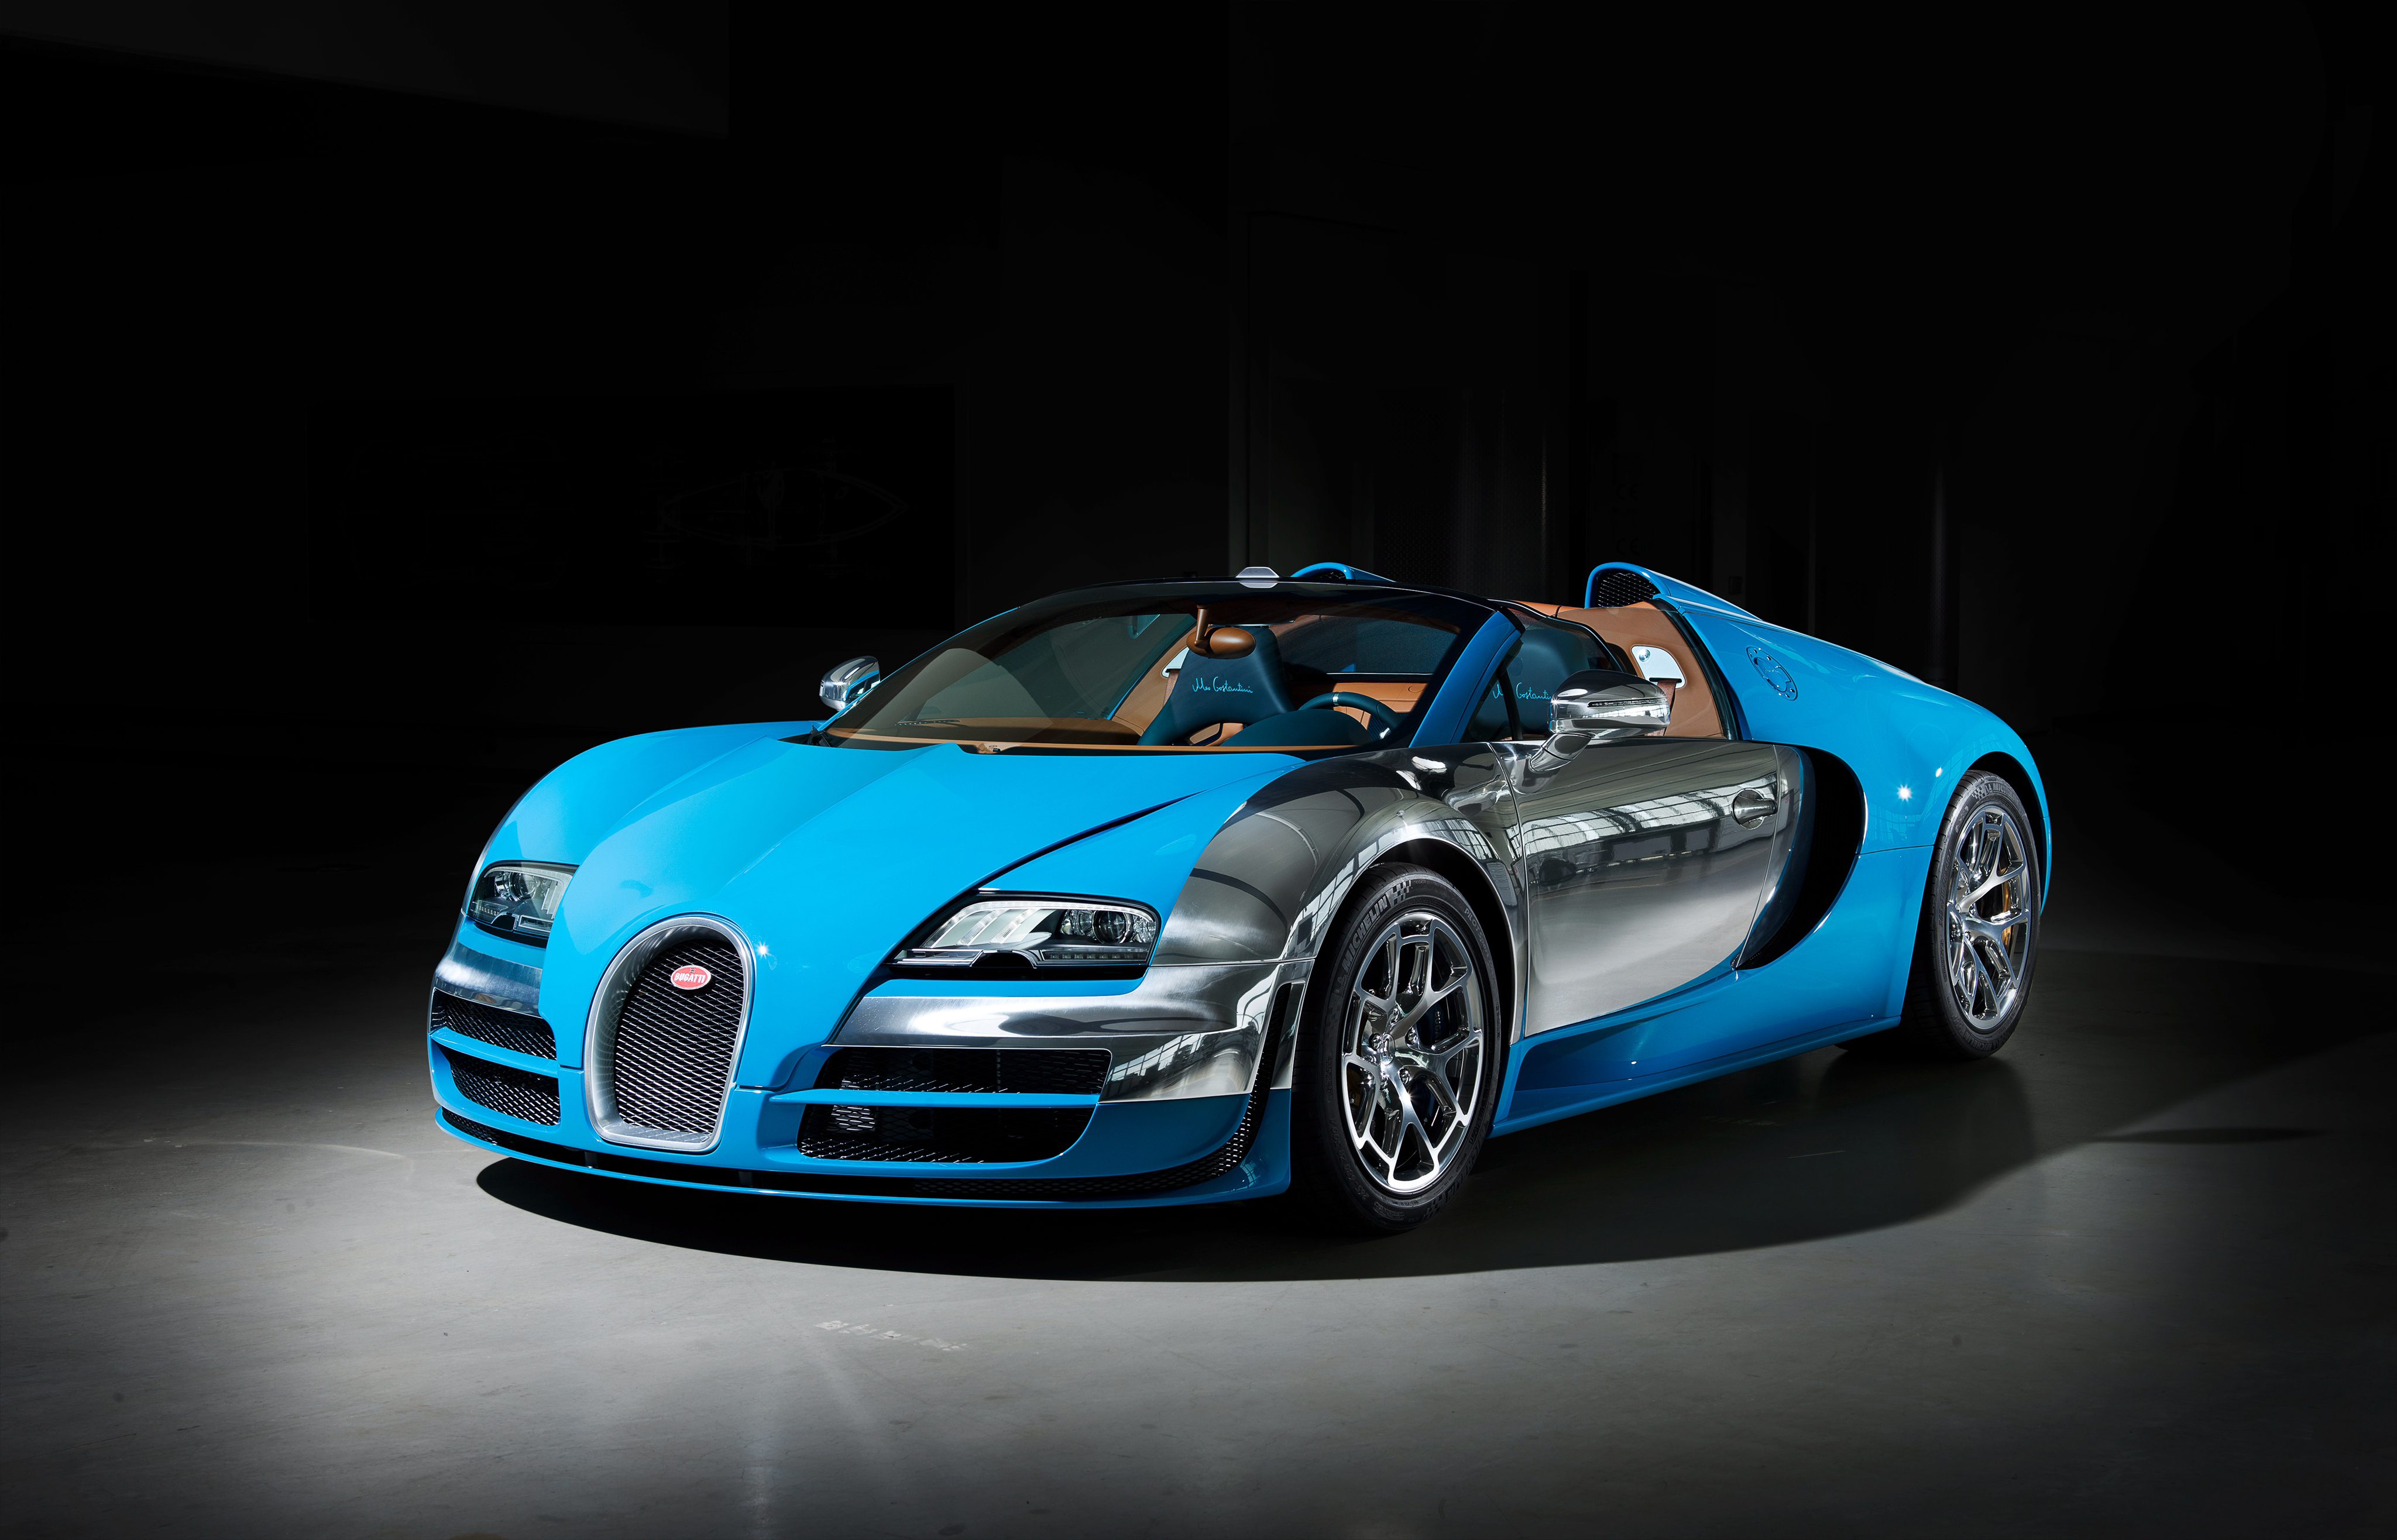 Descargar las imágenes de Bugatti gratis para teléfonos Android y iPhone,  fondos de pantalla de Bugatti para teléfonos móviles